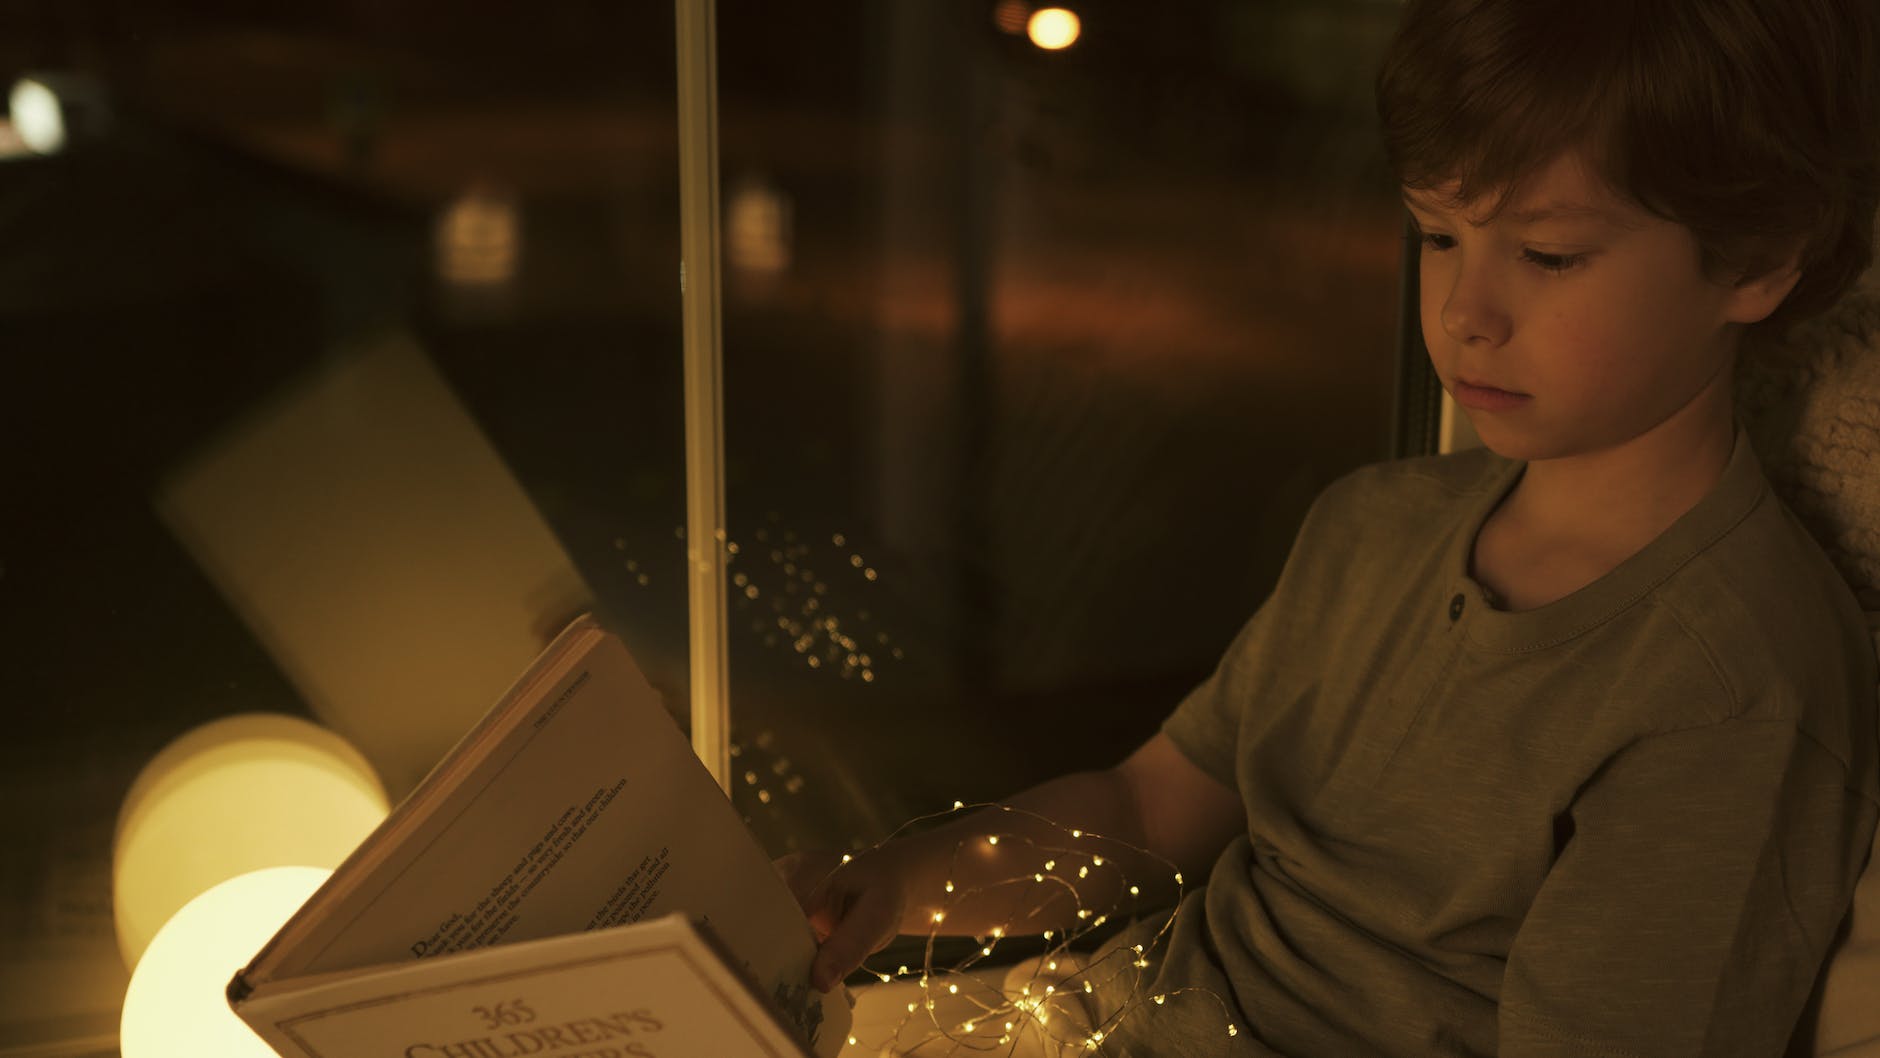 a boy reading a book near a window